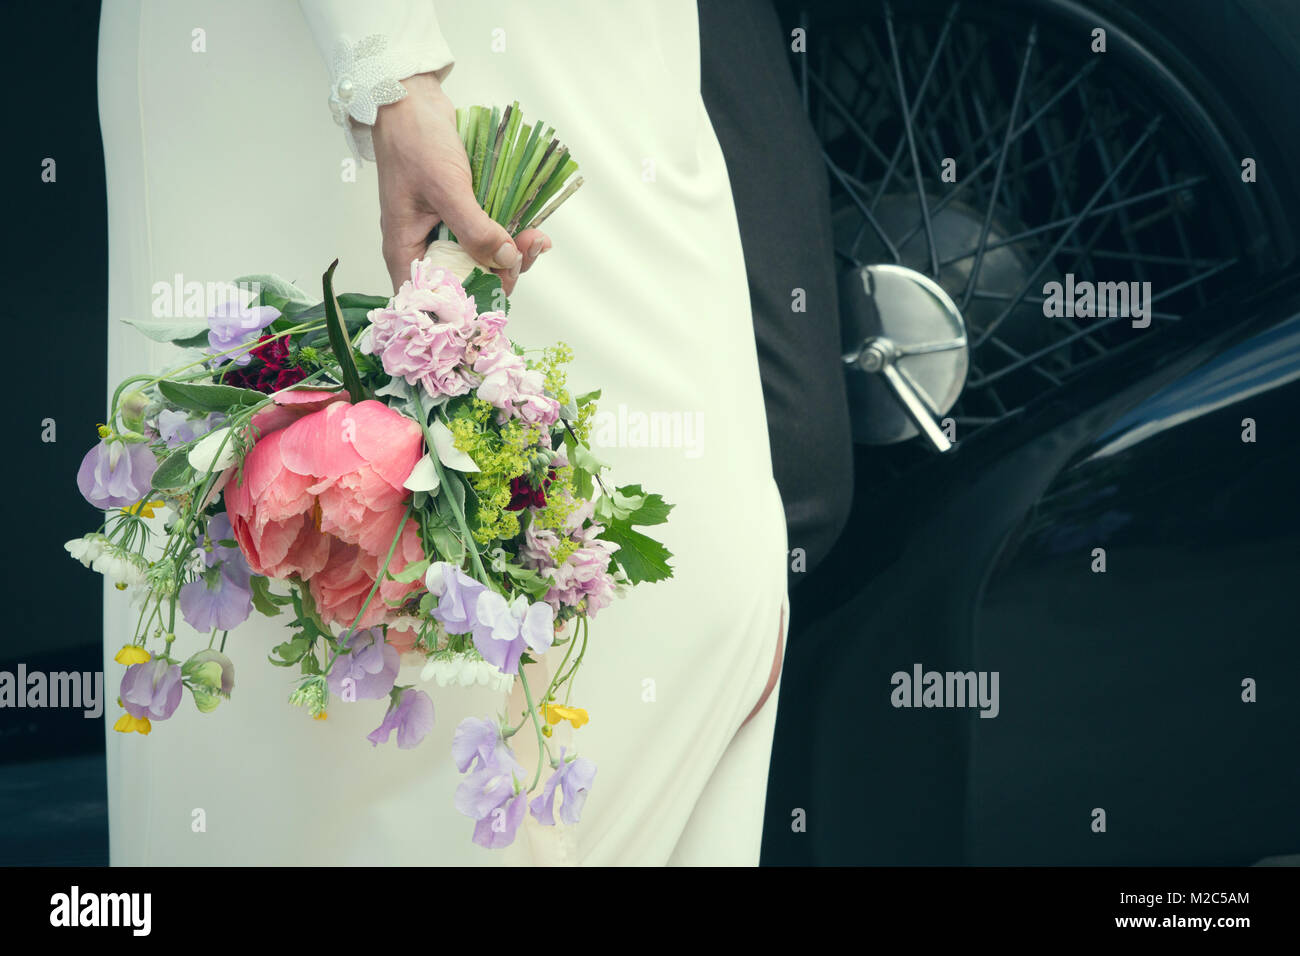 Braut Holding wedding bouquet, mittlere Partie Stockfoto